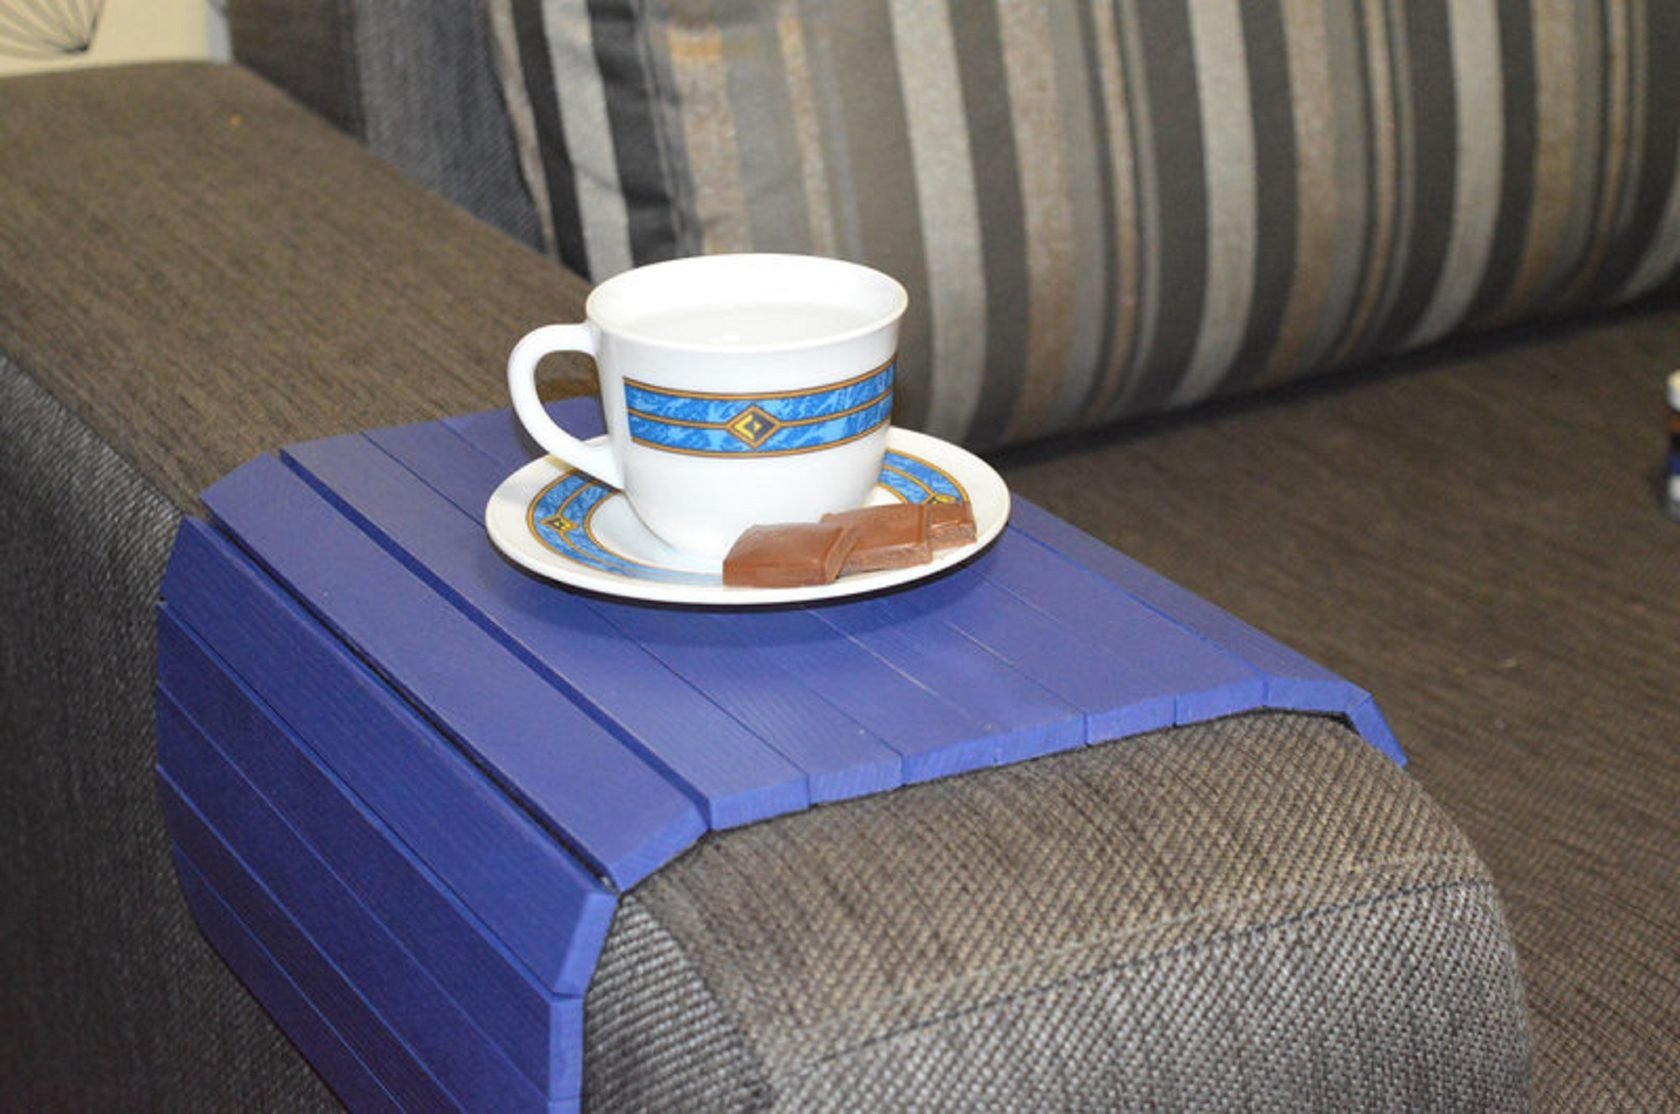 Дерев'яна накладка, столик, килимок на підлокітник дивану (синій) #2i2ua